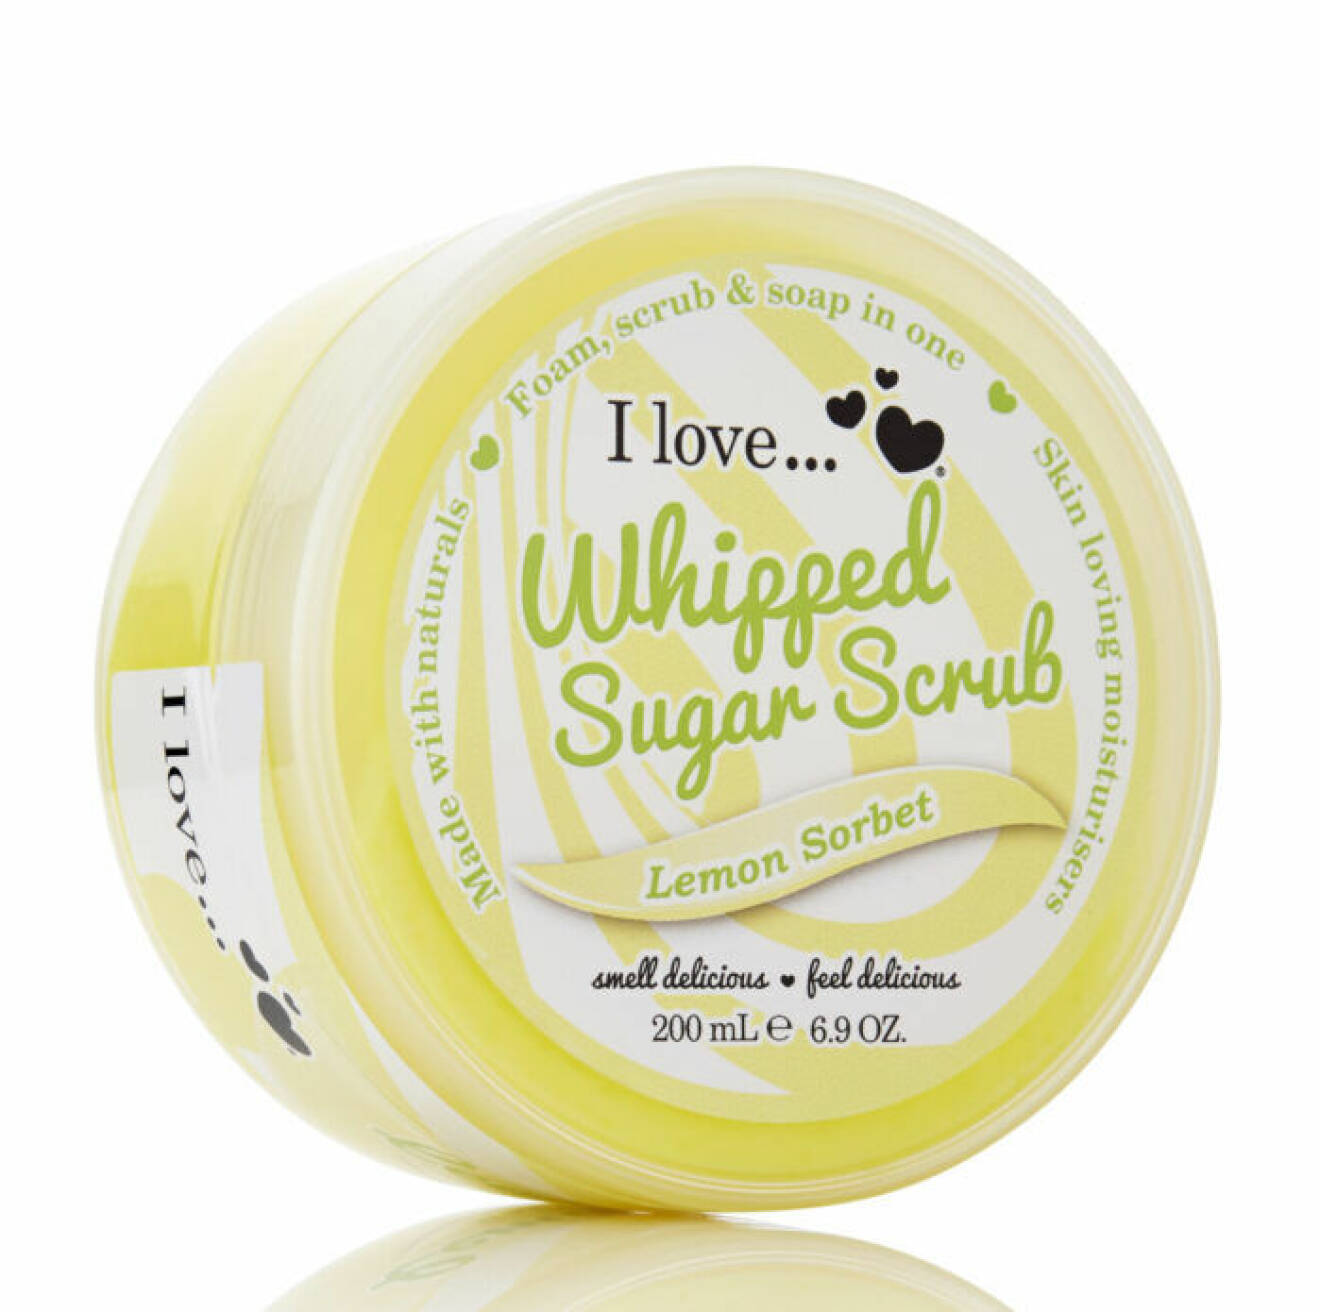 En bild på produkten I Love...Whipped Sugar Scrub Lemon Sorbet som går att köpa på Lyko.